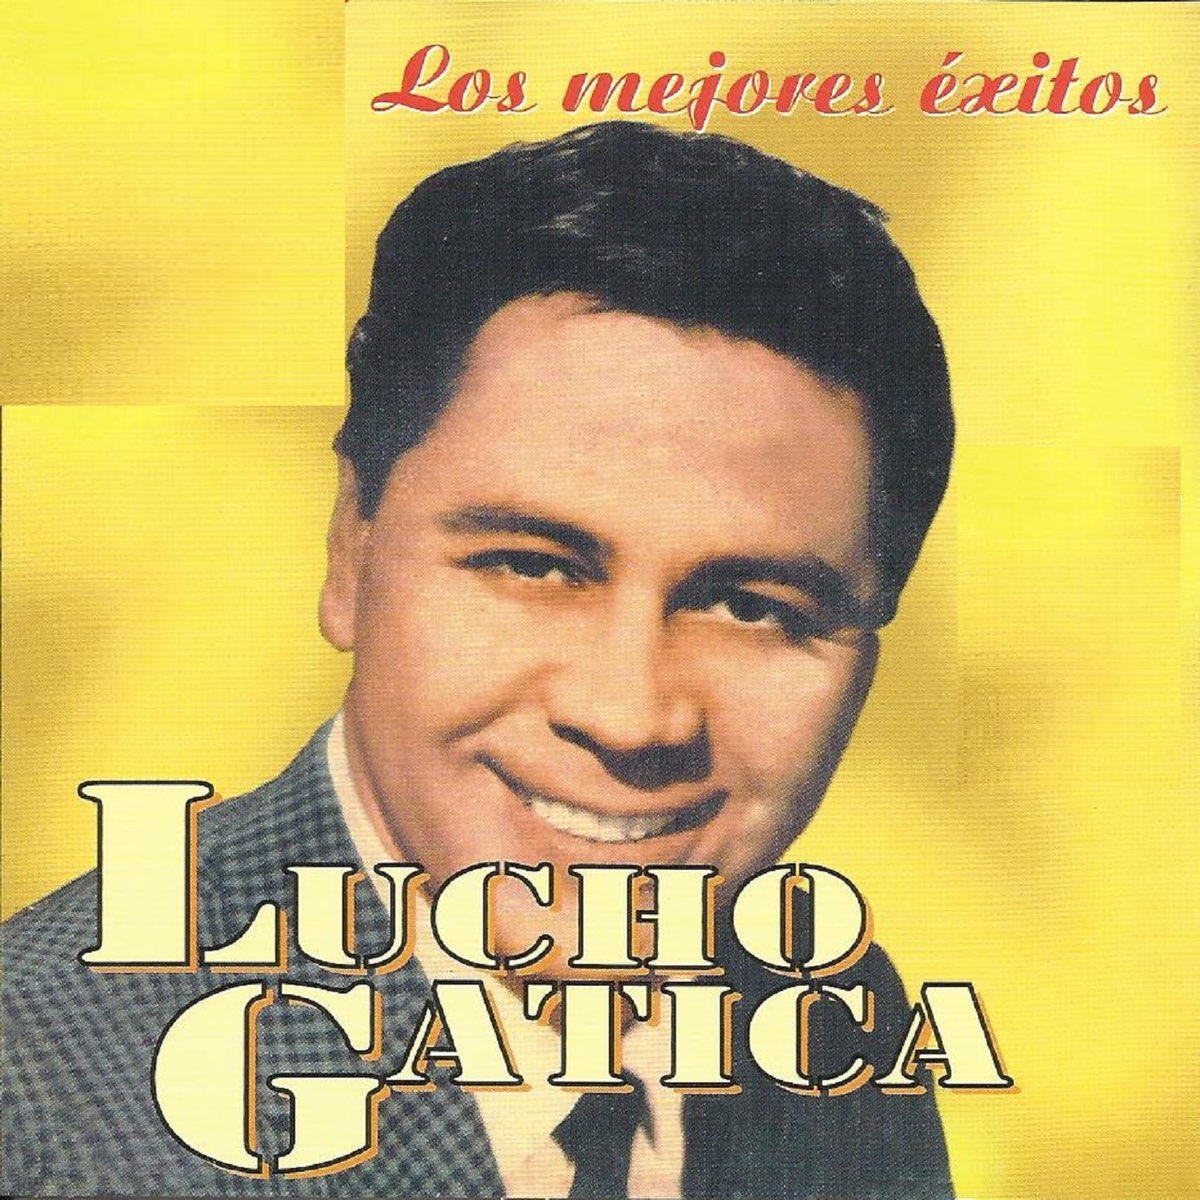 ‎Los Mejores Éxitos de Lucho Gatica - Album by Lucho Gatica - Apple Music